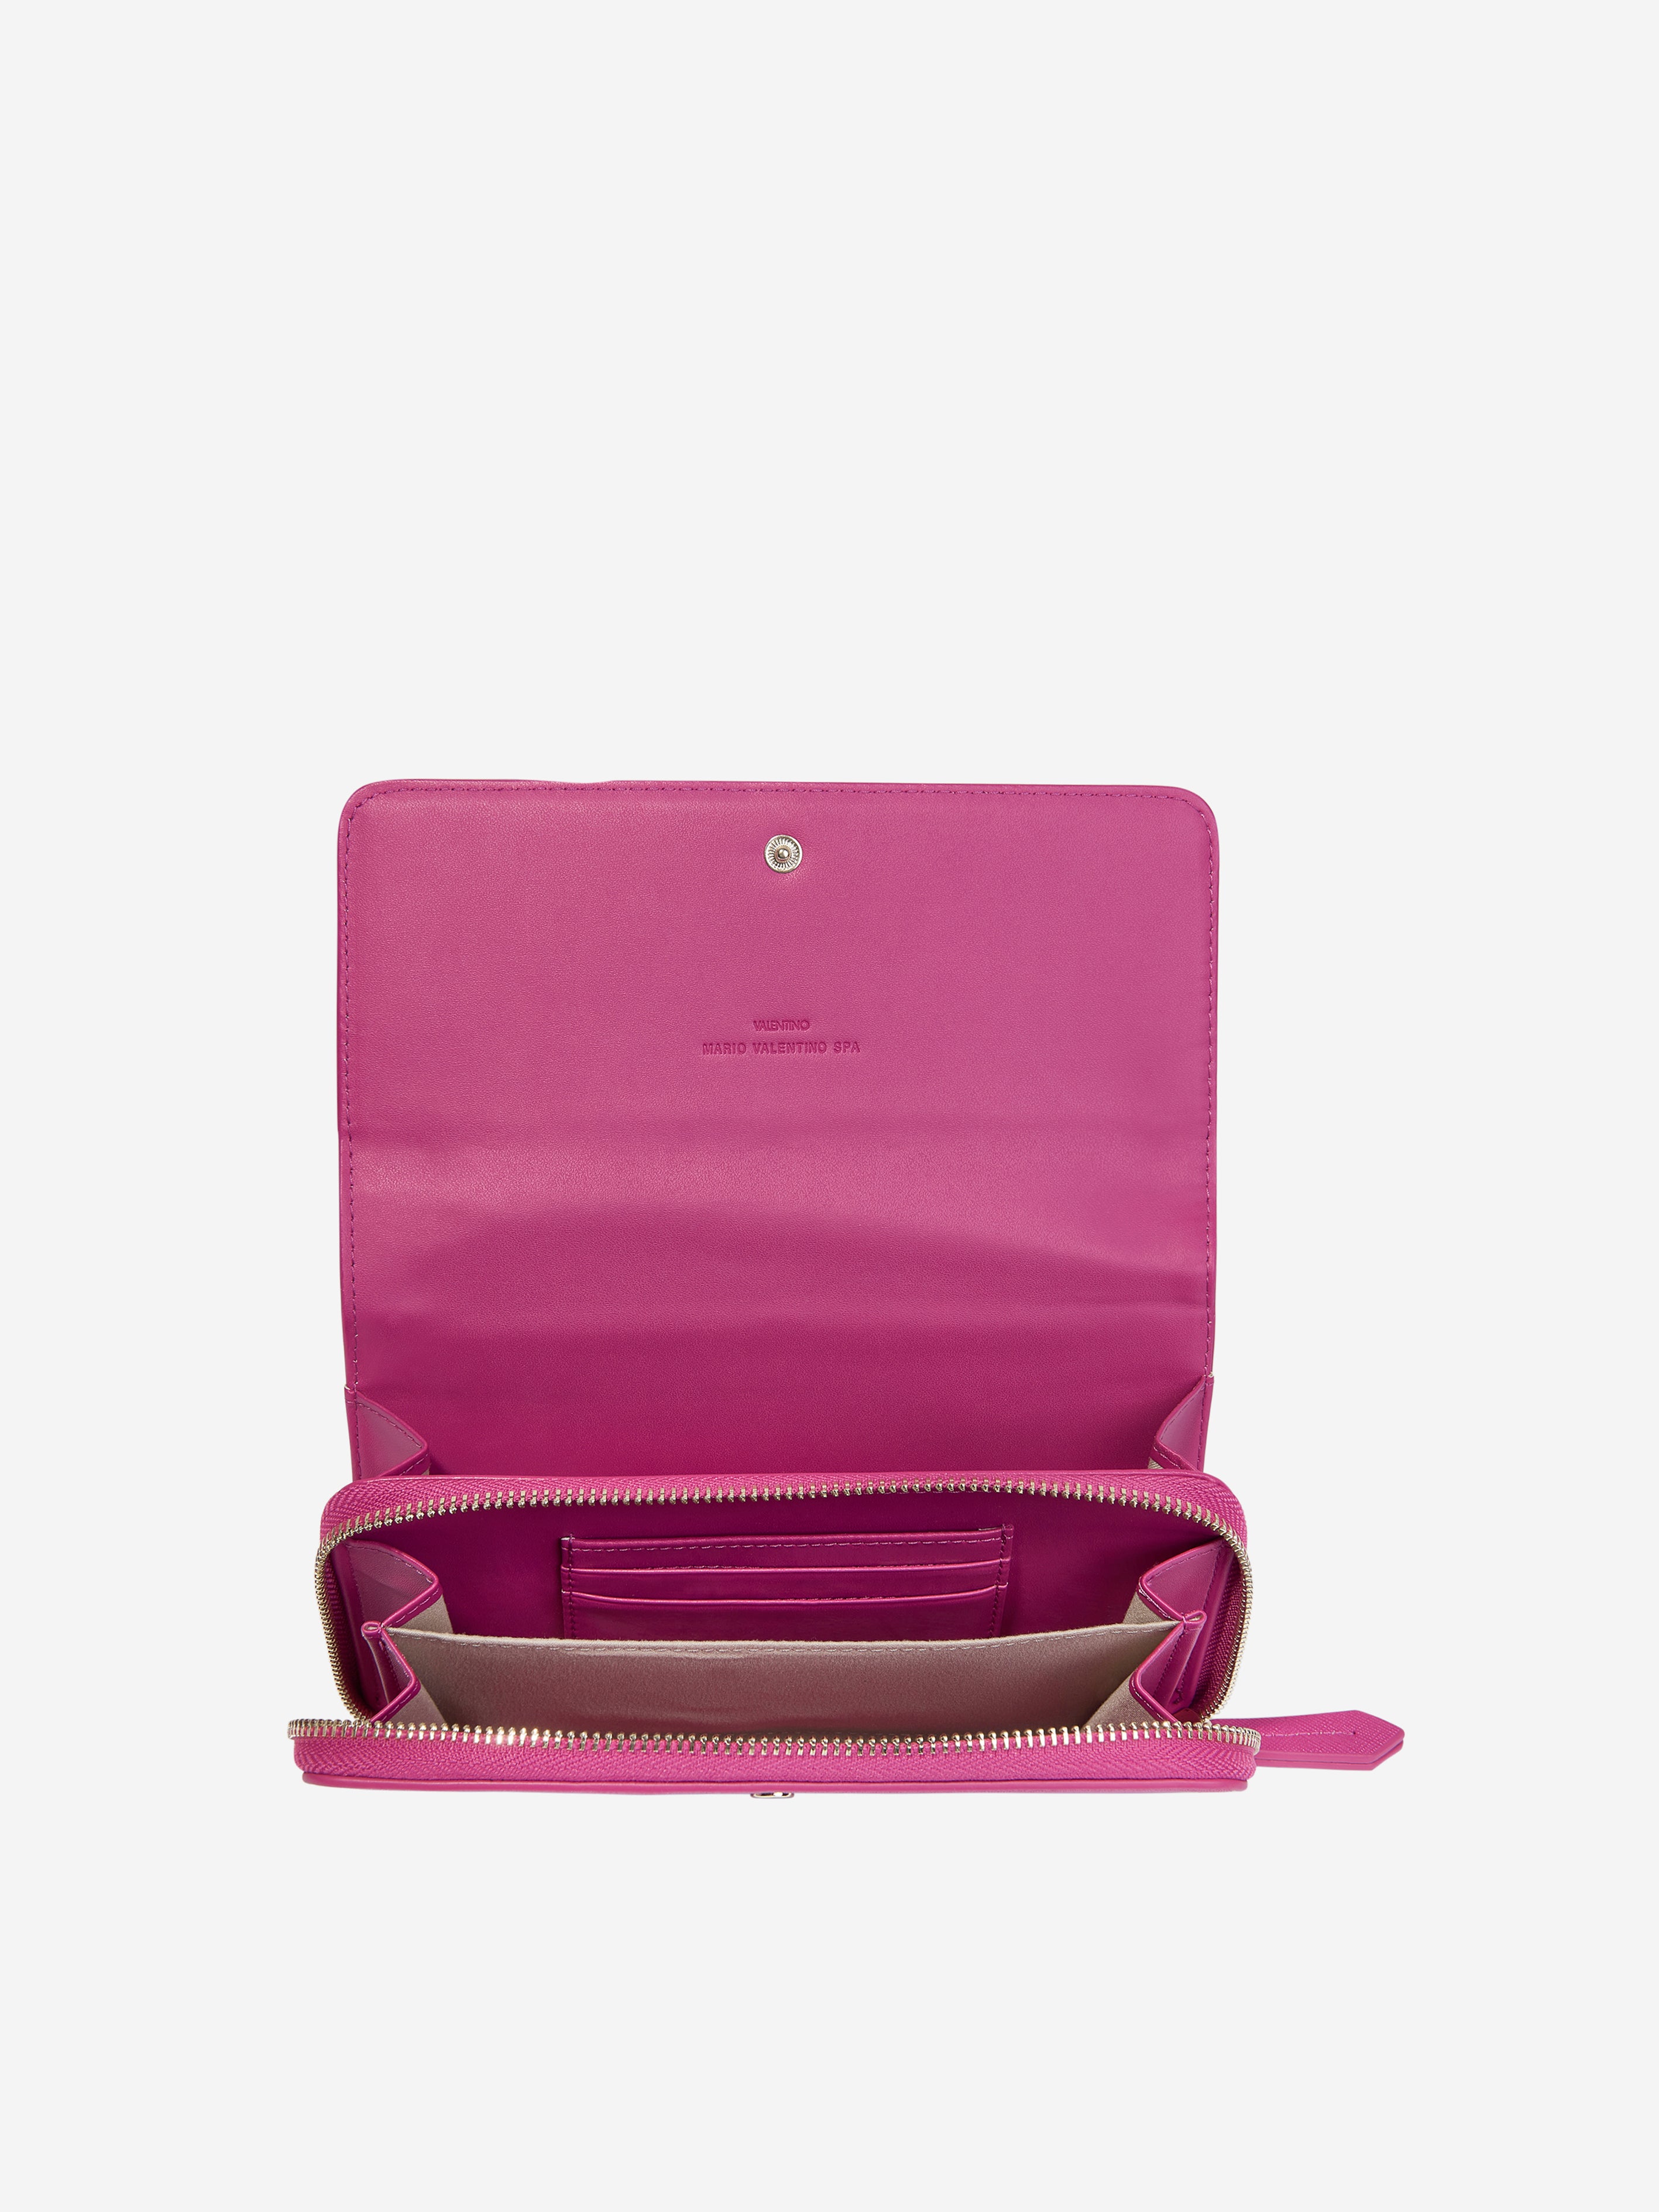 Girls Zero Wallet With Shoulder Strap in Pink (W:20cm